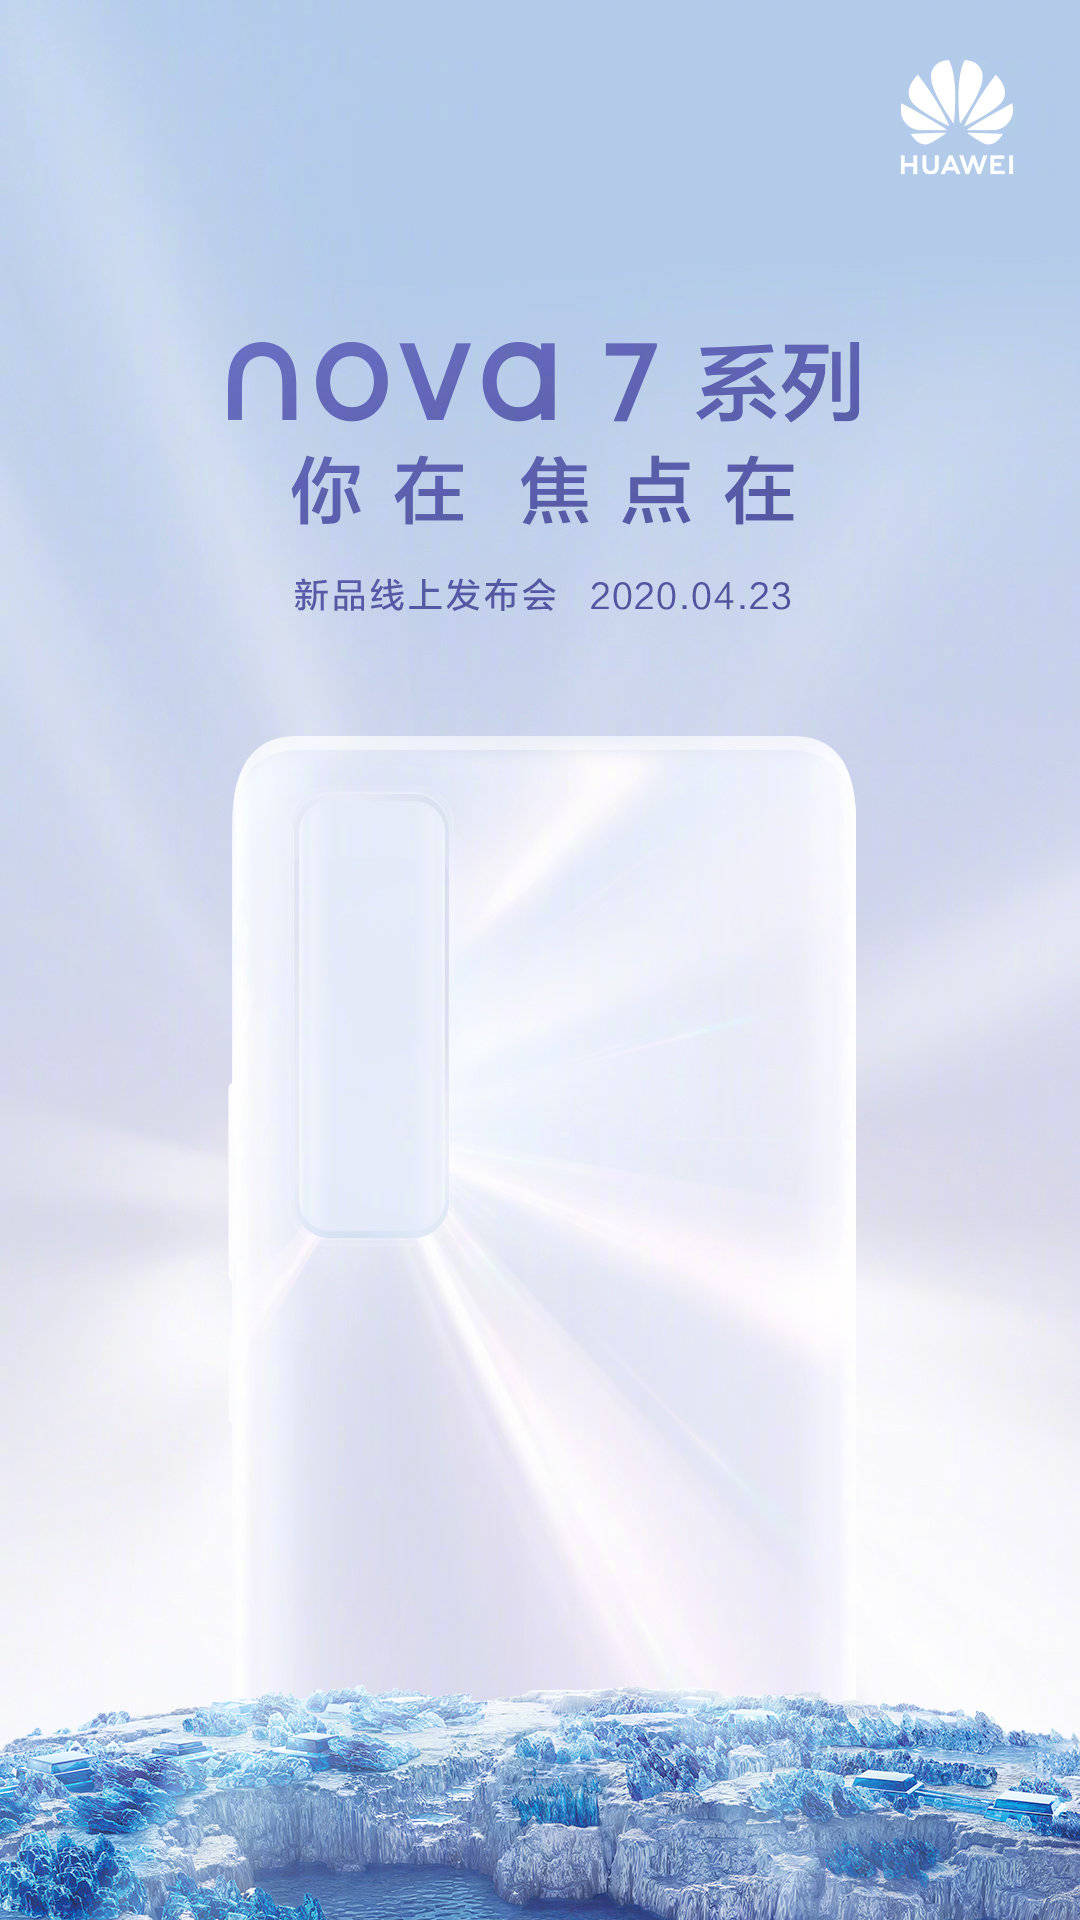 Huawei Nova 7 Series Launch Date